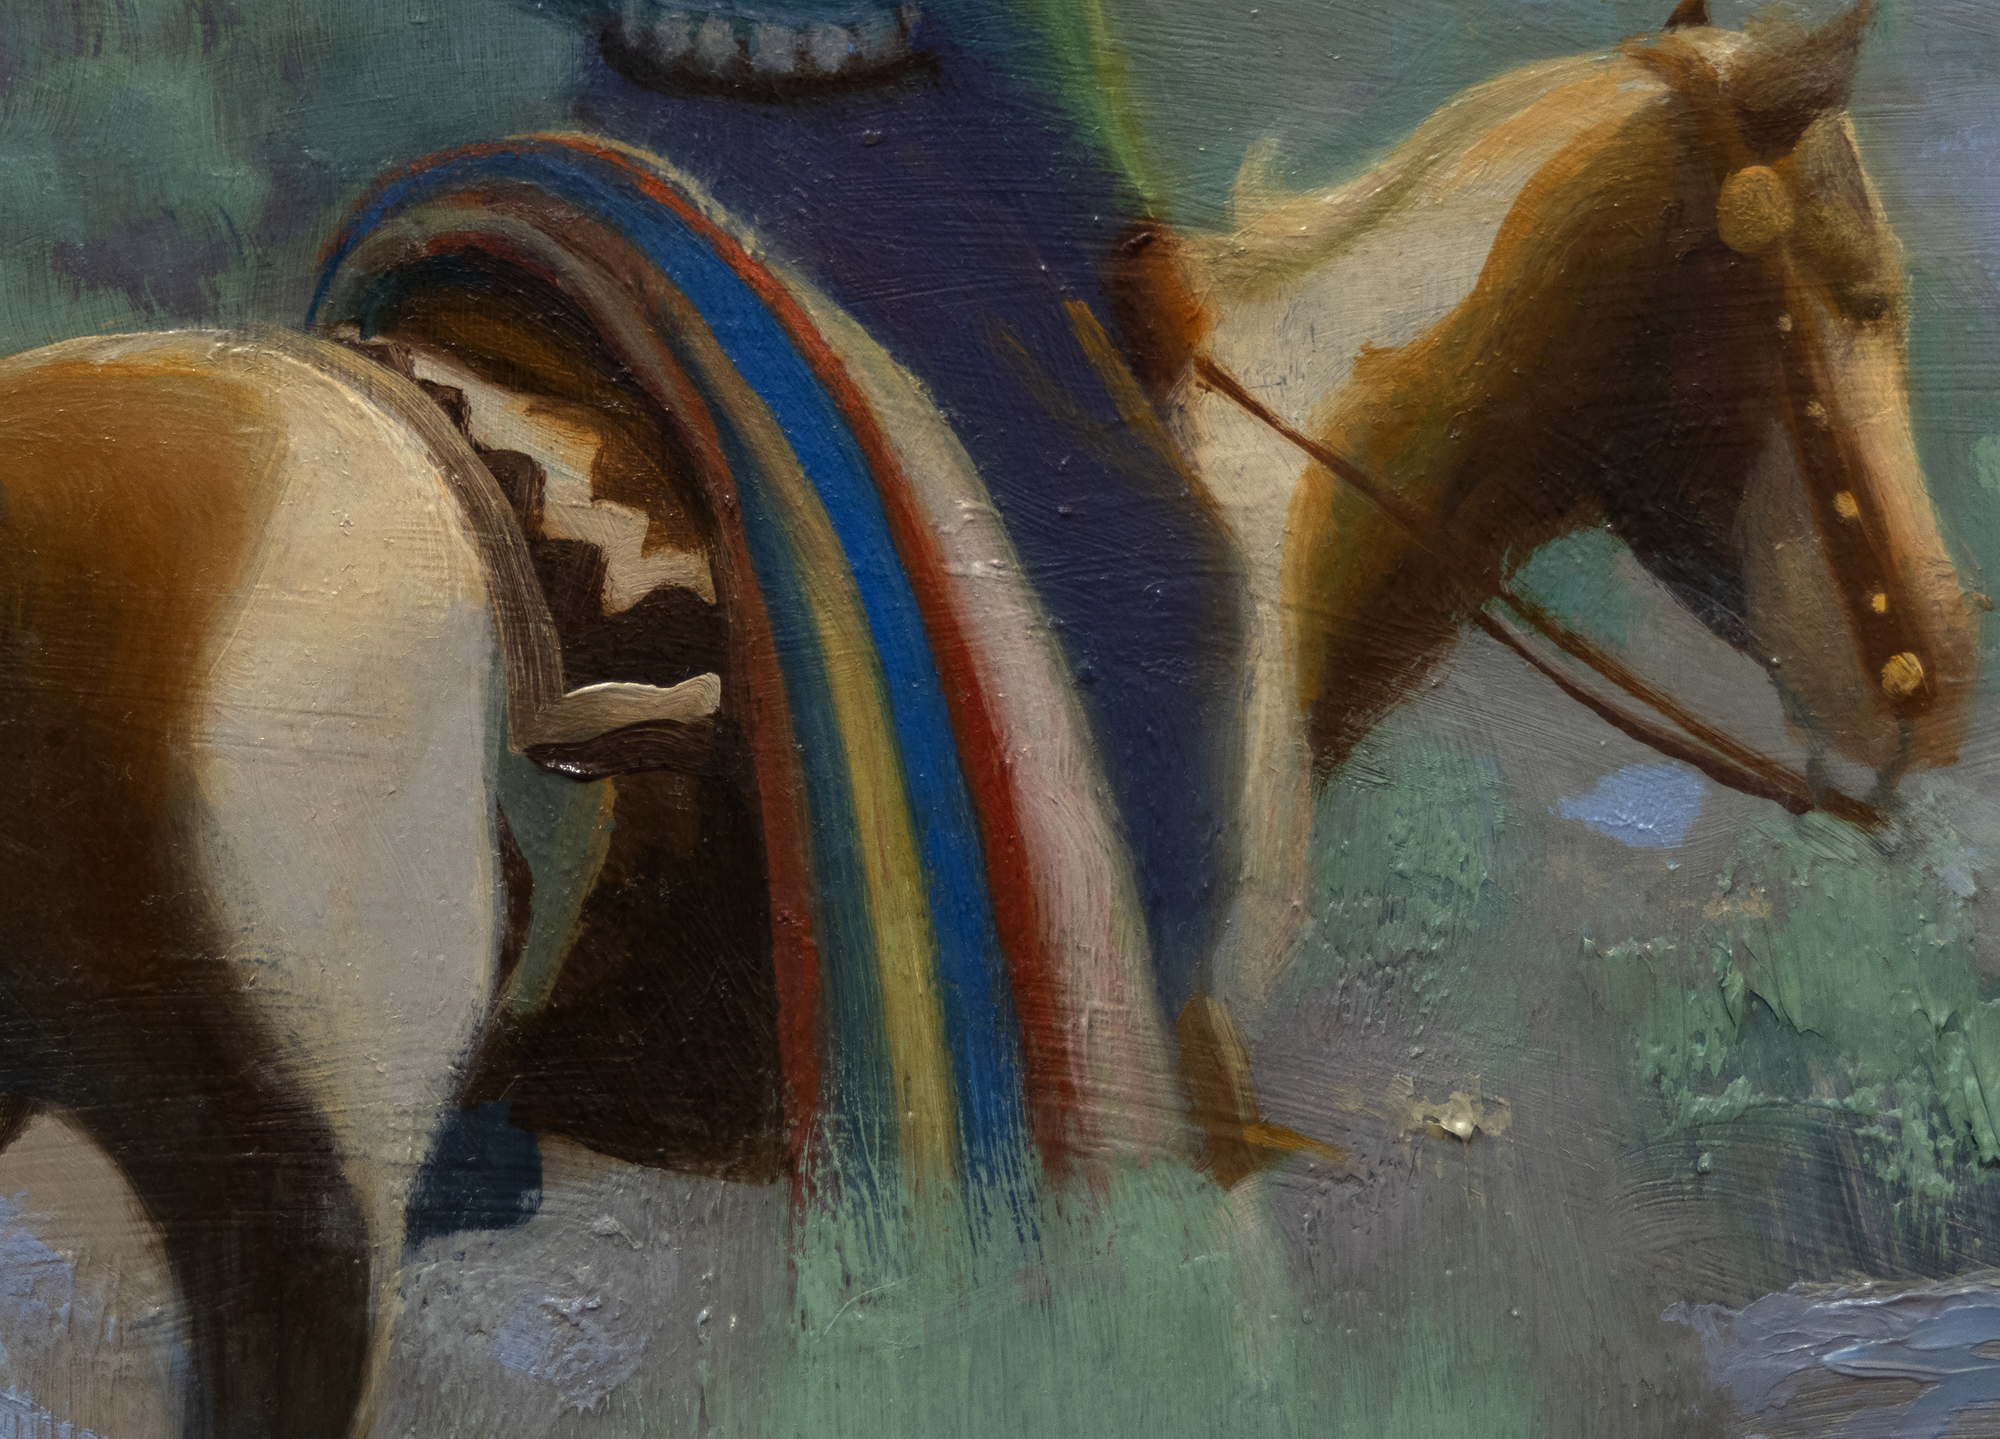 ジェラルド・カーティス・デラノは、N.C.ワイエスに師事し、「デザインされたリアリズム」と呼ばれる独特の画風で知られる。ナバホ・キャンプ」のような絵画は、デラノの鋭い目と理解力、そしてナバホ族の生活様式の色彩と気高さを捉える能力を示すものである。彼のほとんどの作品に見られるように、空はキャンバスの大部分を占め、人物は情景にスケールを与えている。これらの要素が一体となって、広大さと静寂の感覚を生み出している。